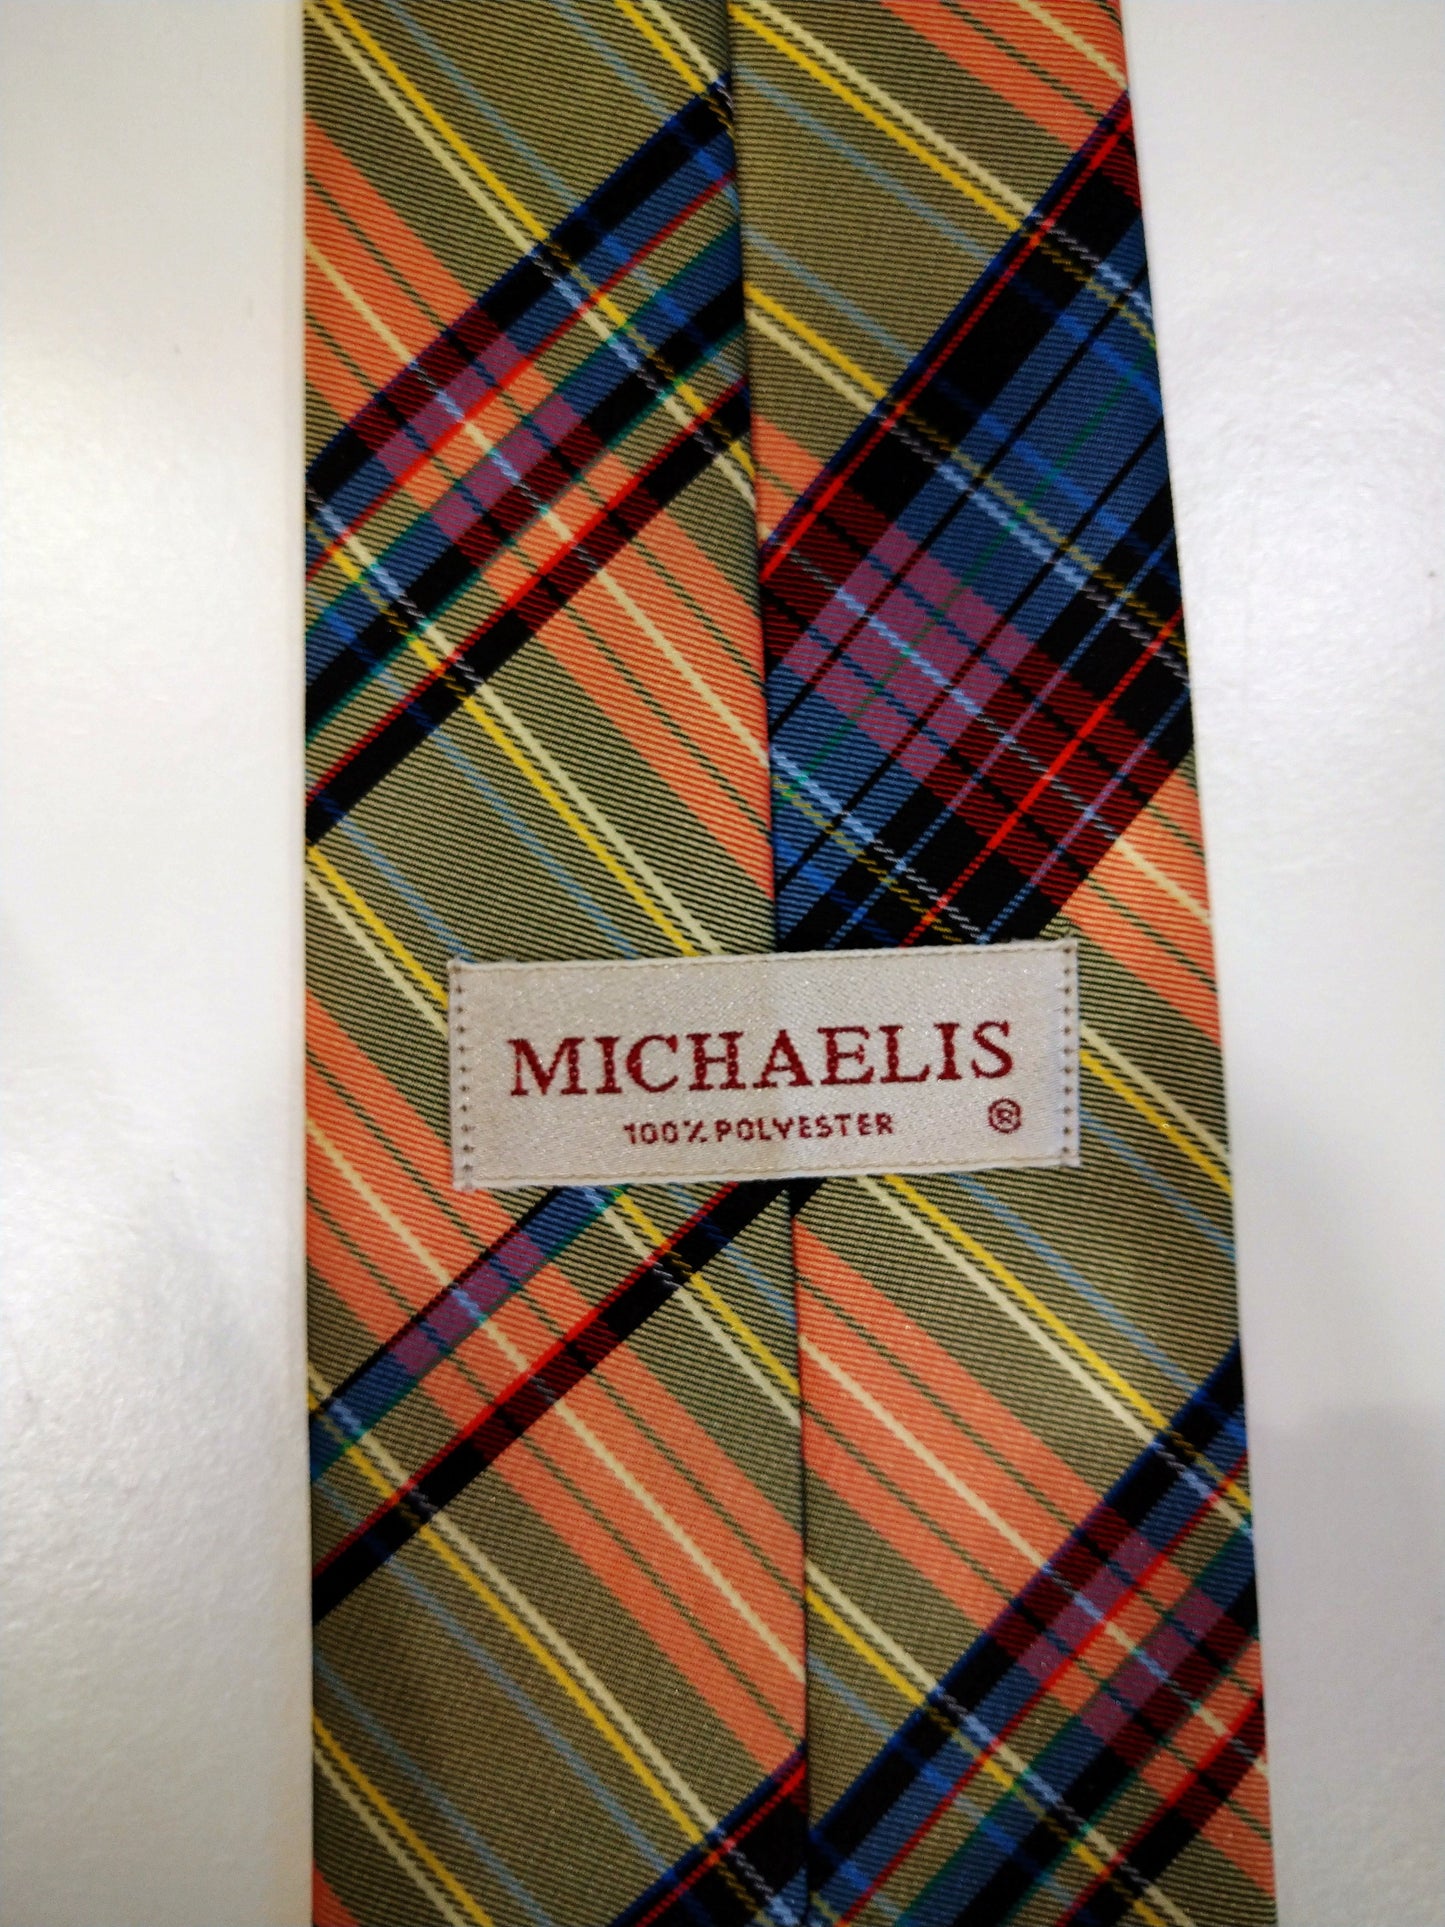 Kleurige Michaelis geruite polyester stropdas.